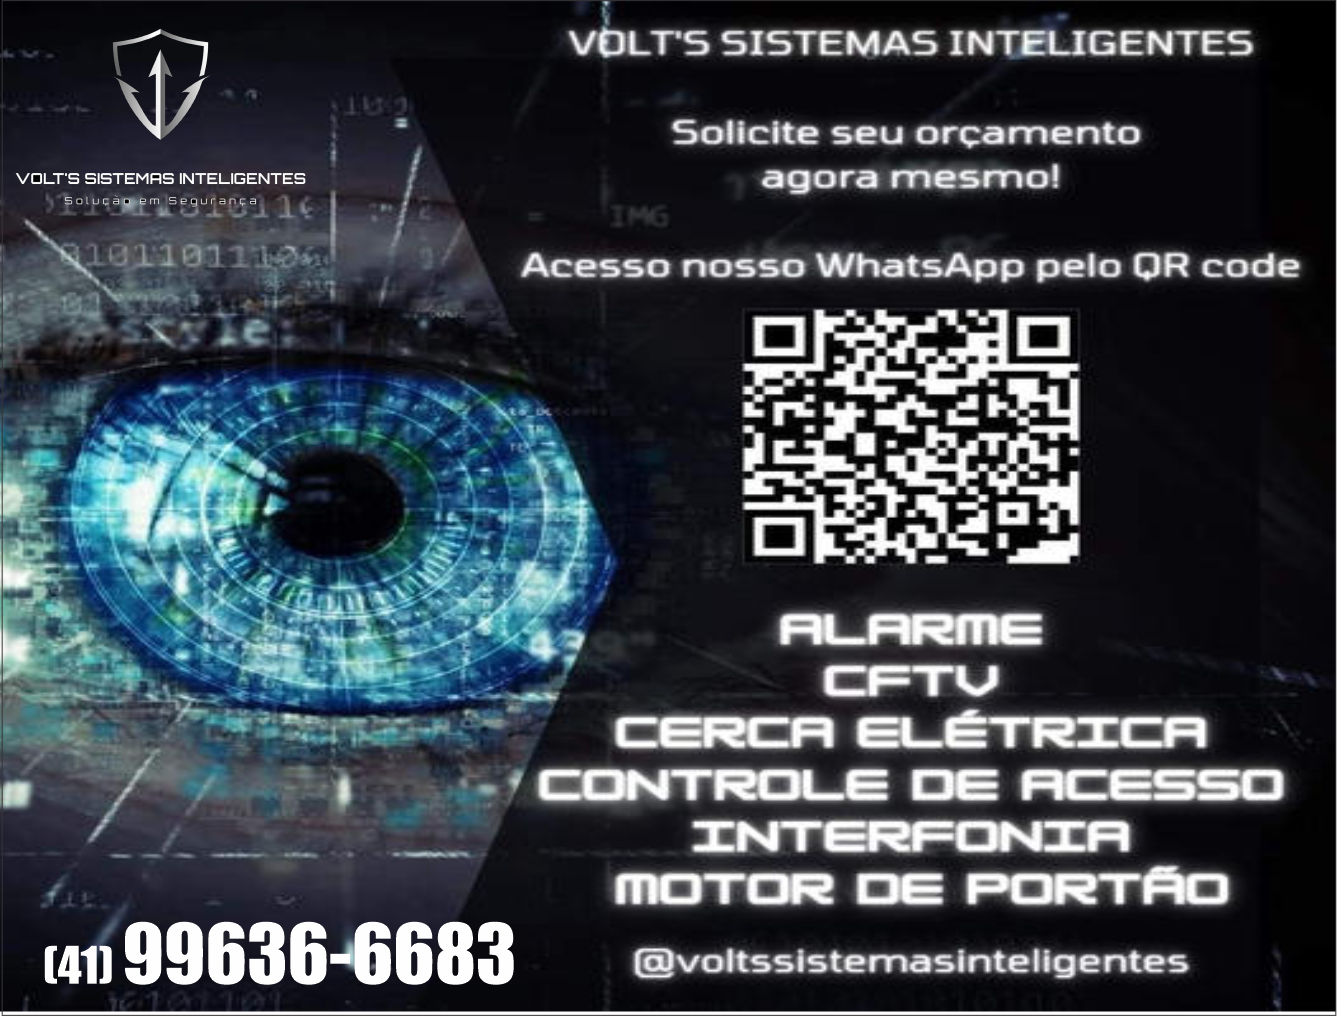 Volts Sistemas Inteligentes Soluções em Segurança      Fones: (41) 99636-6683 